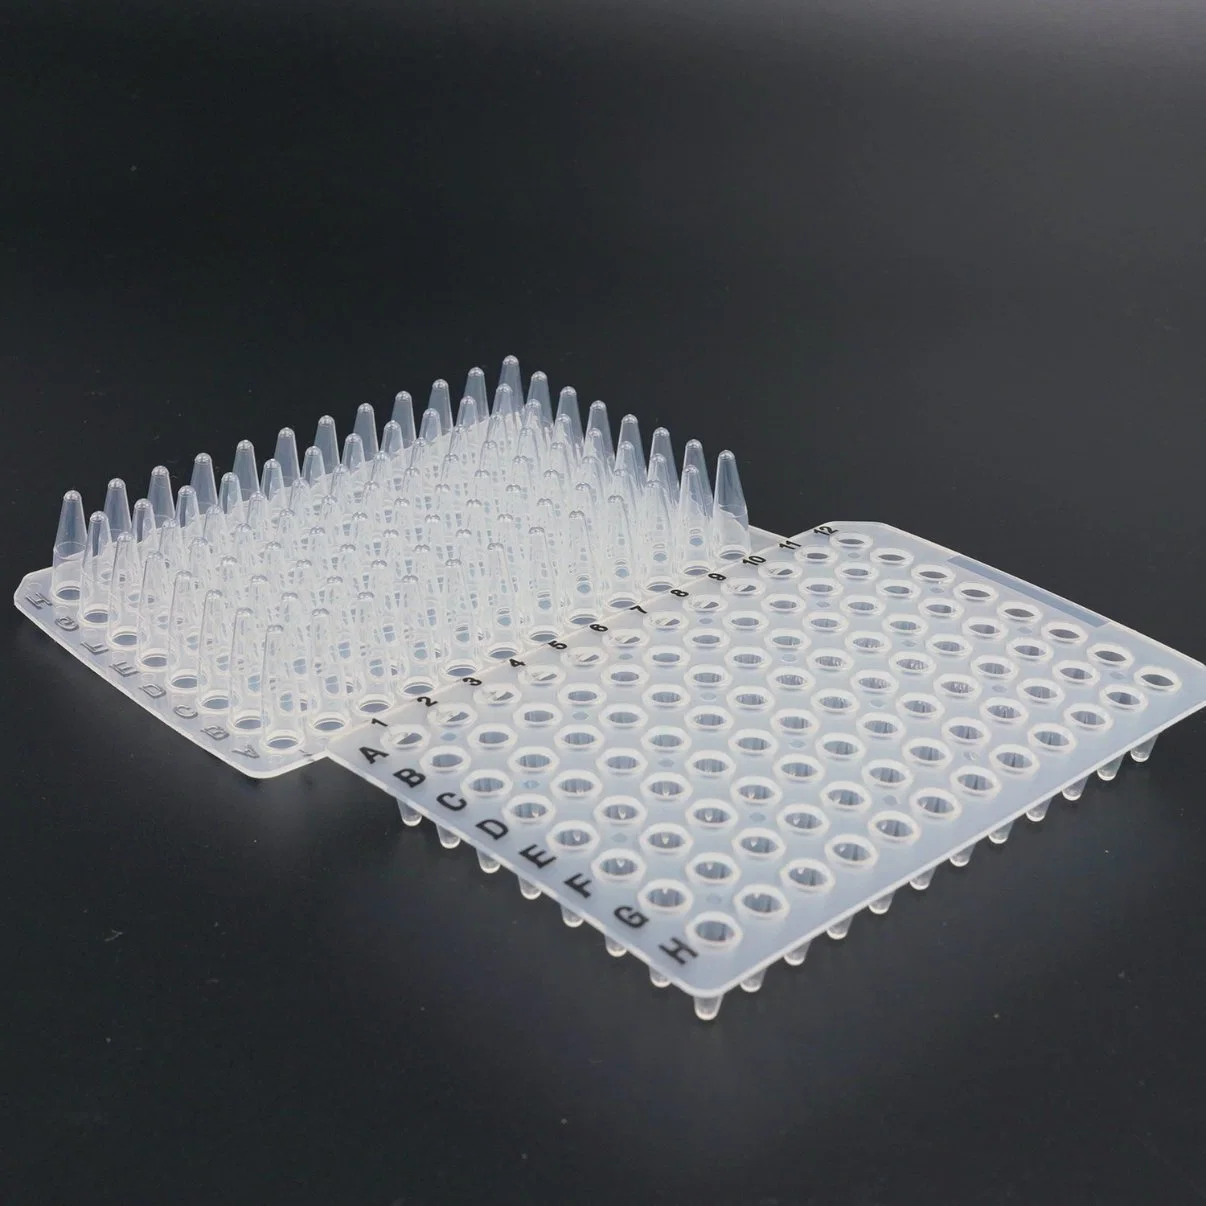 المواد المستهلكة في المختبر تزود بوليبروبيلين لوحة بئر عميقة شفافة 24 بئر